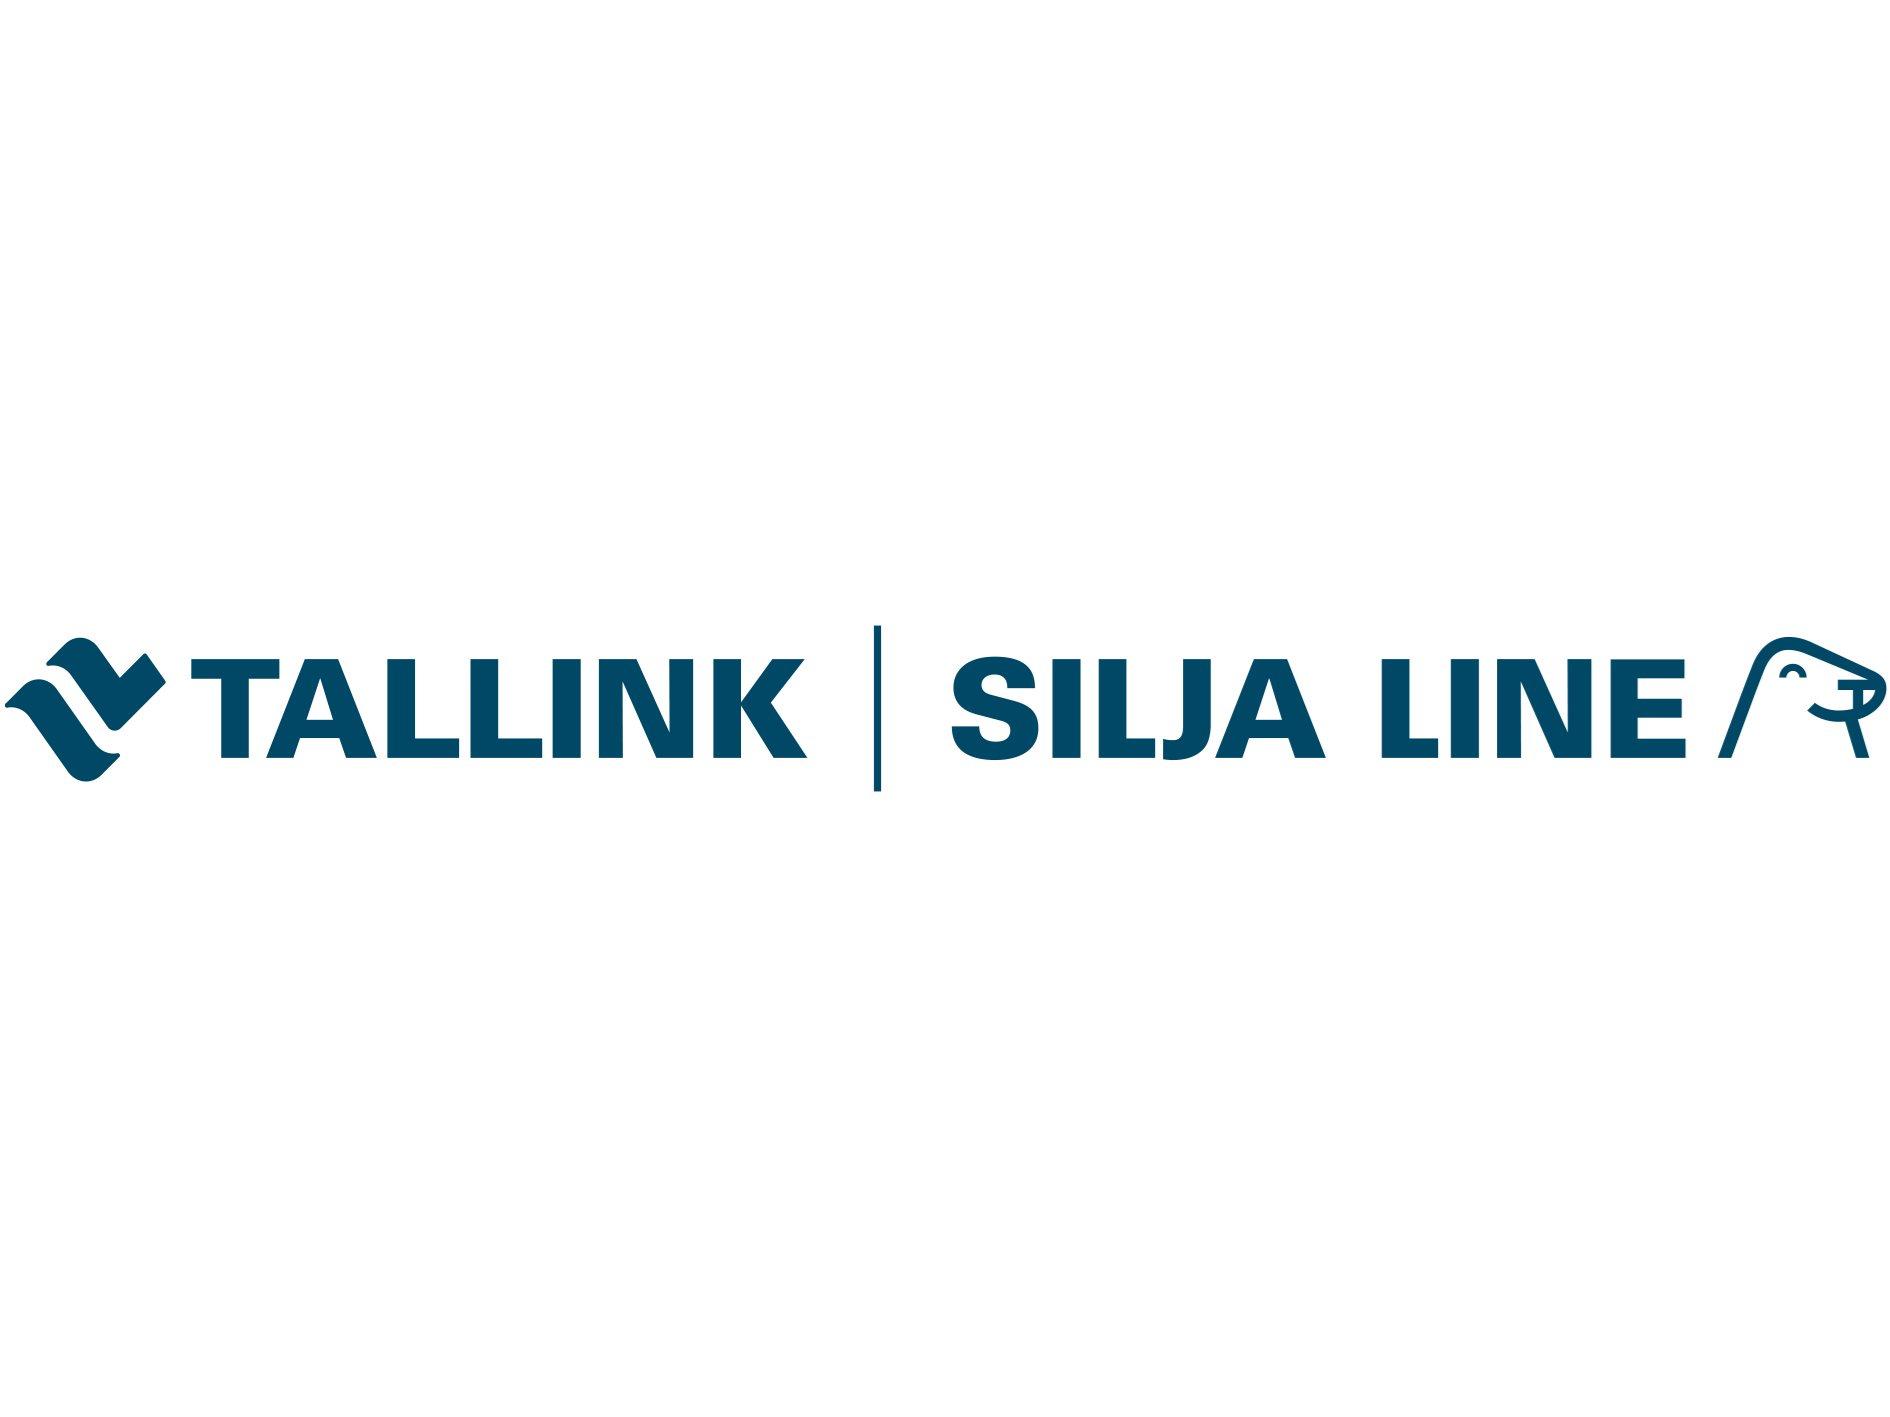 Tallink & Silja Line